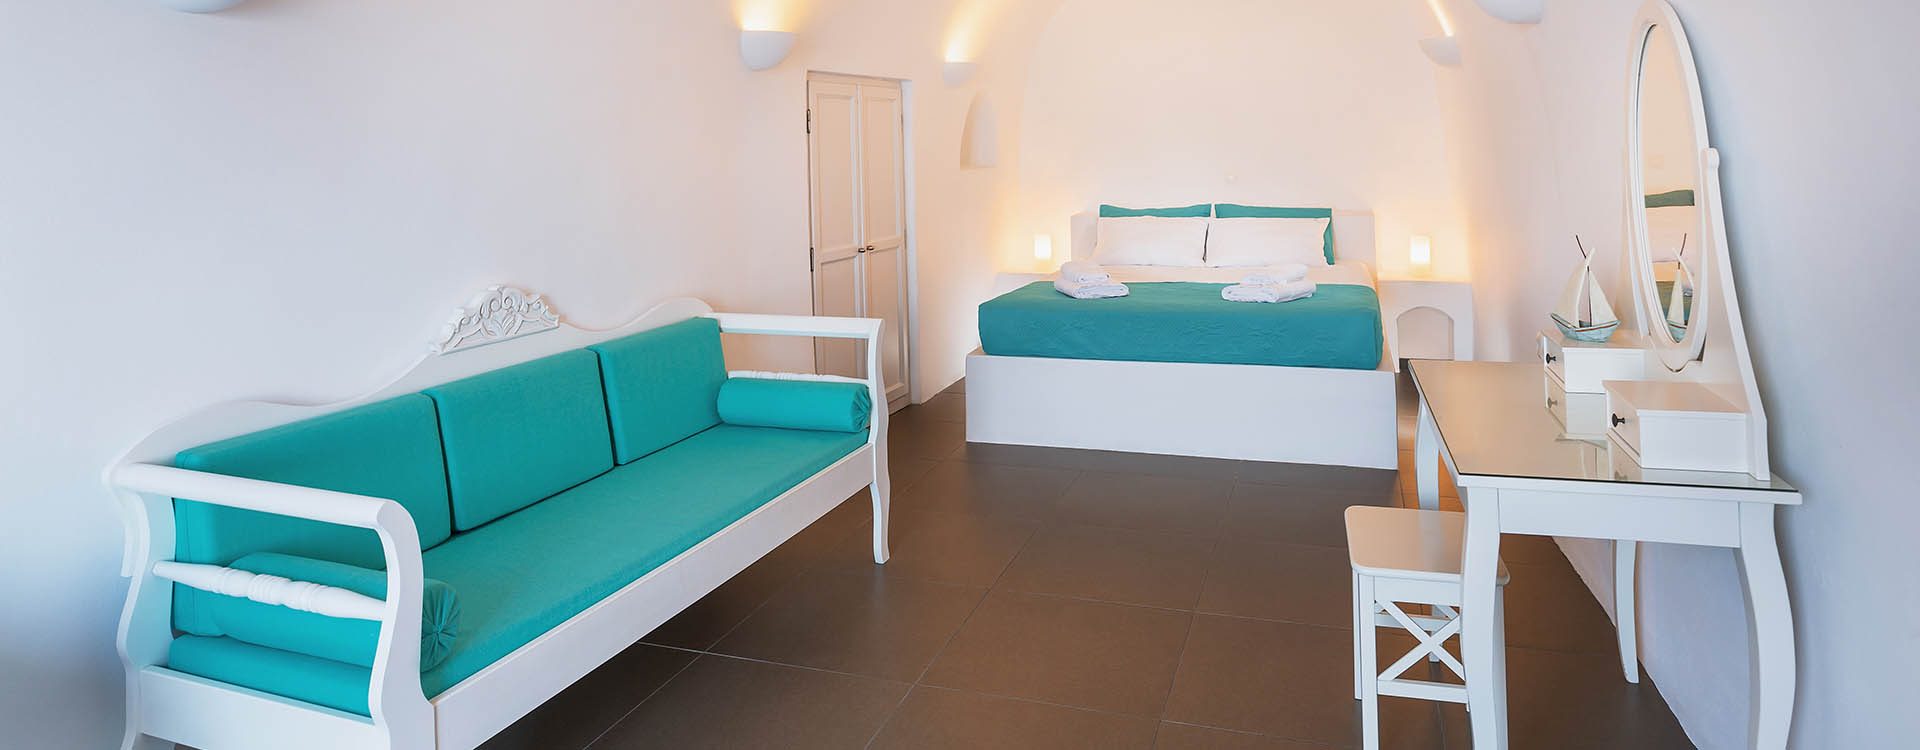 accommodation oia santorini | Horizon Aeifos Suites